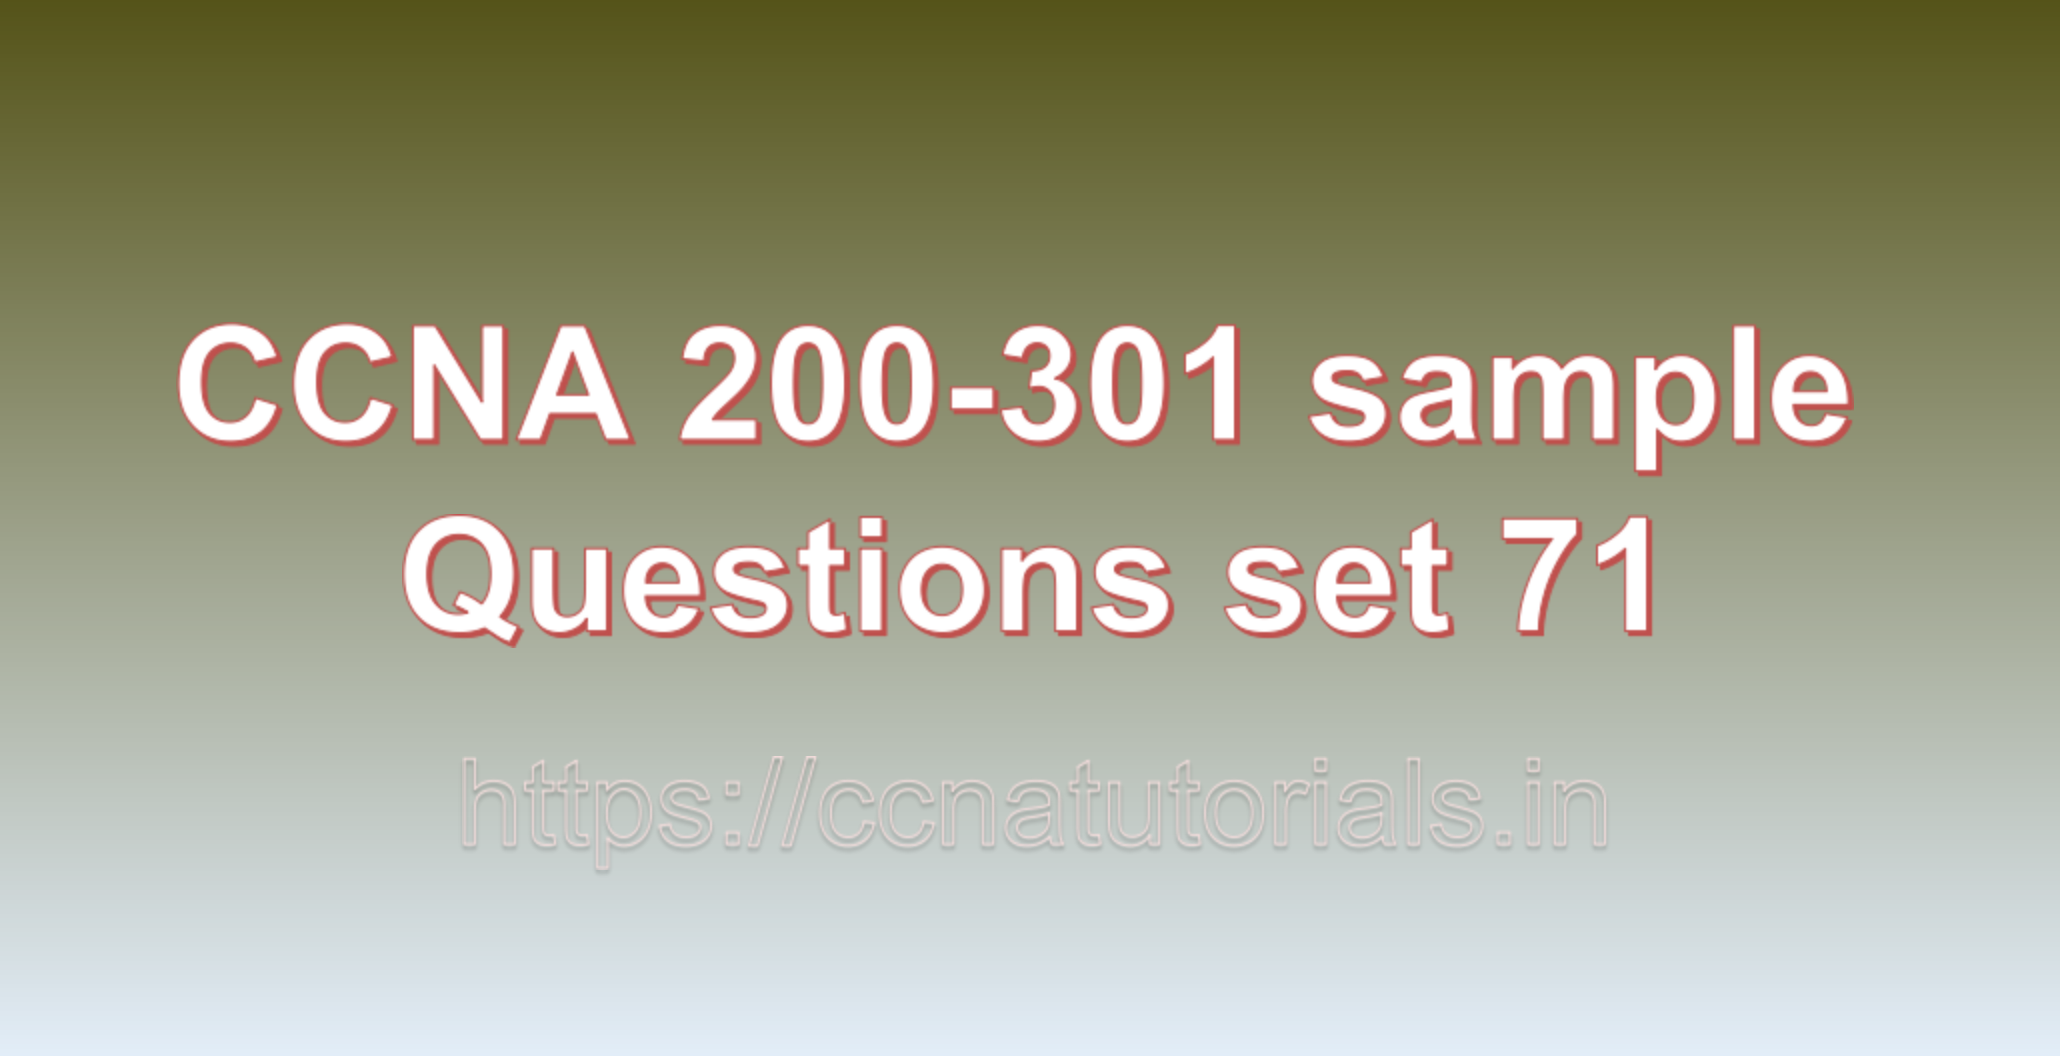 ccna sample questions set 71, ccna tutorials, CCNA Exam, ccna